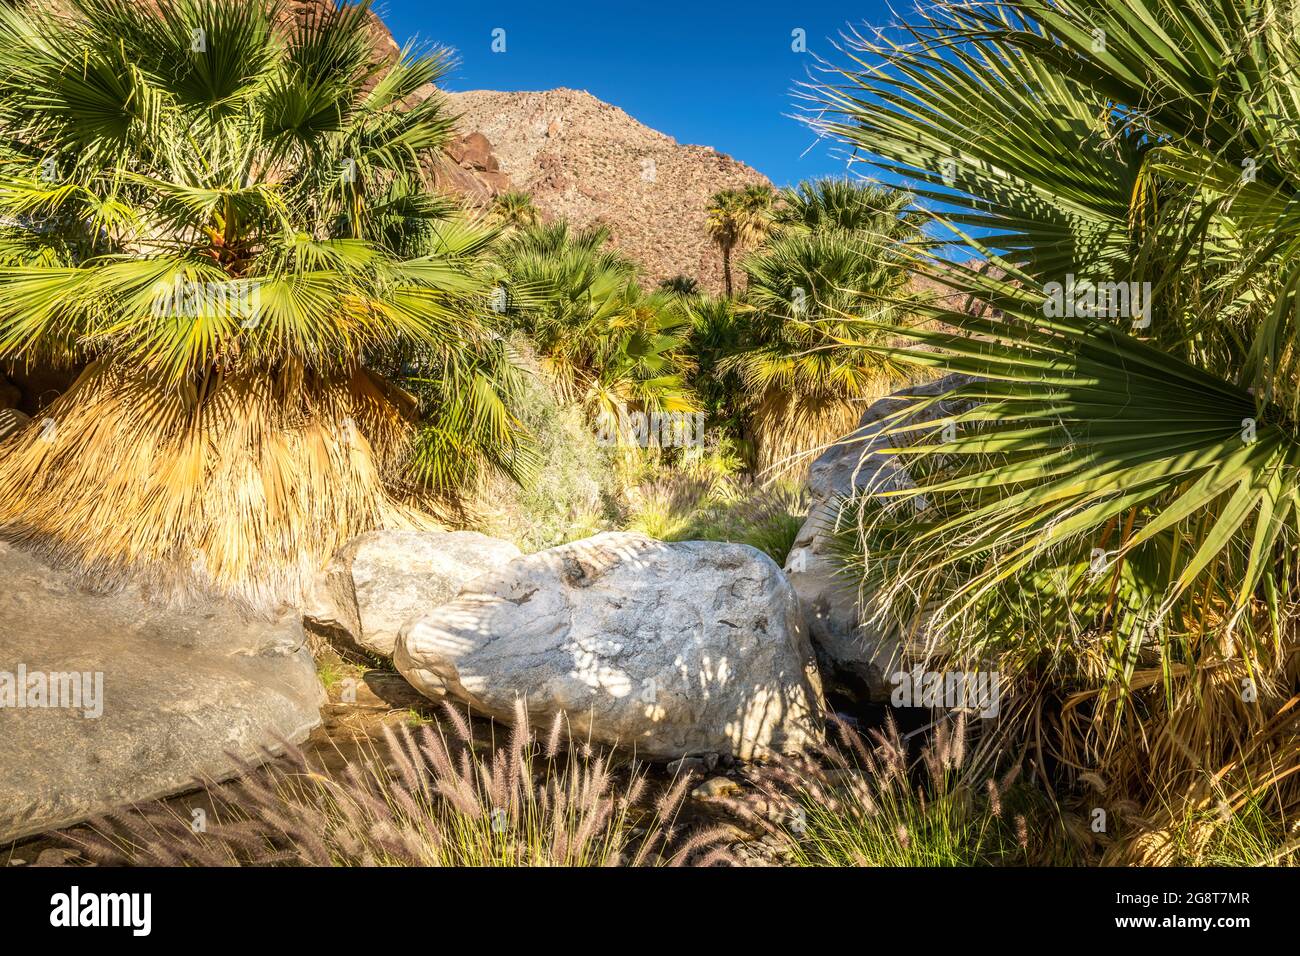 Palmiers le long d'une crique dans le parc national d'Anza Borrego, Californie Banque D'Images